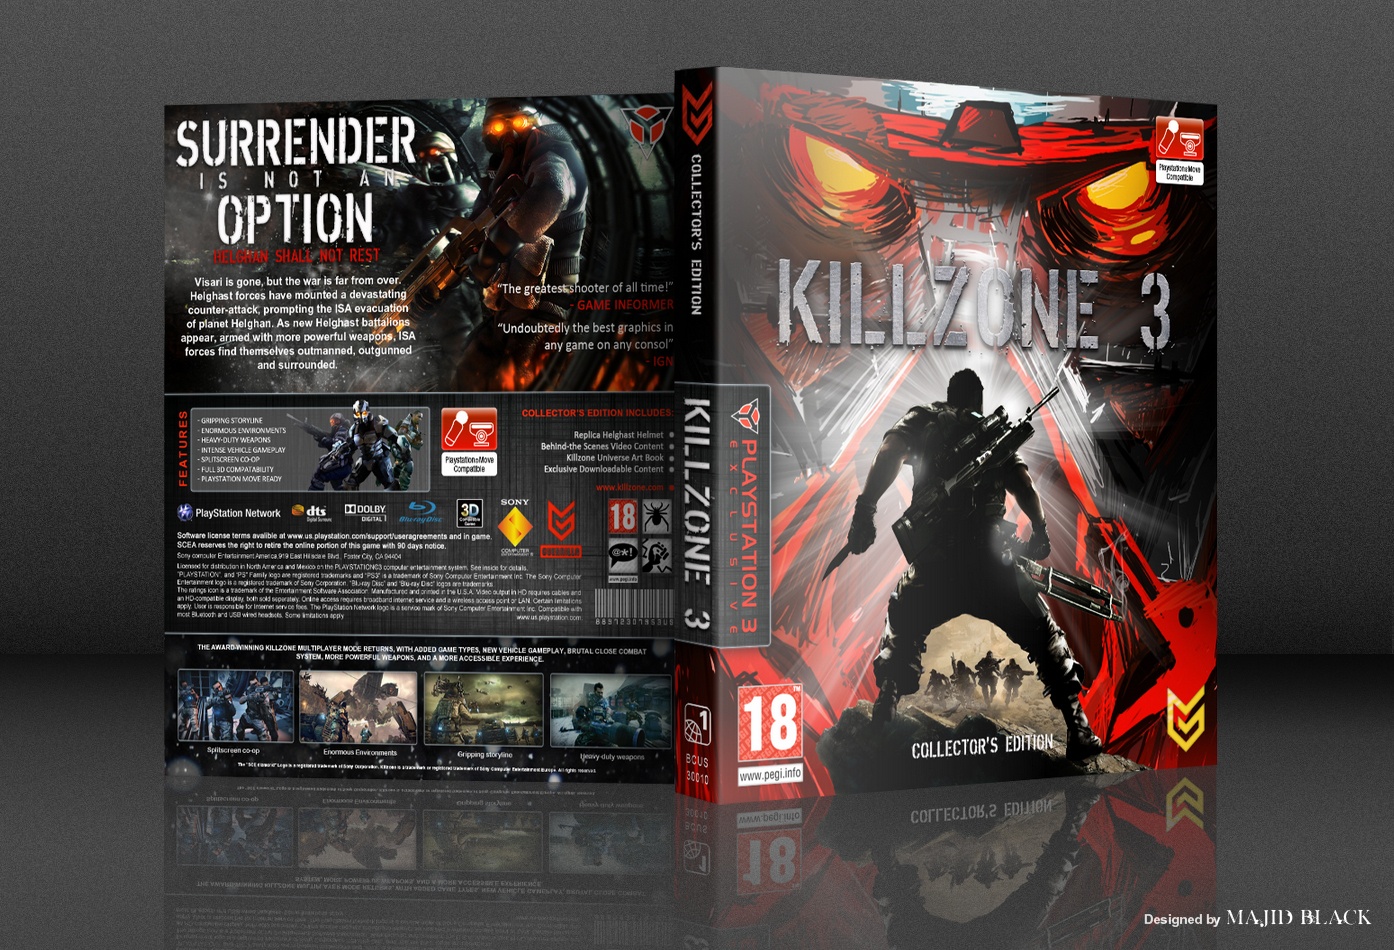 Killzone 3 Collector's Edition box cover